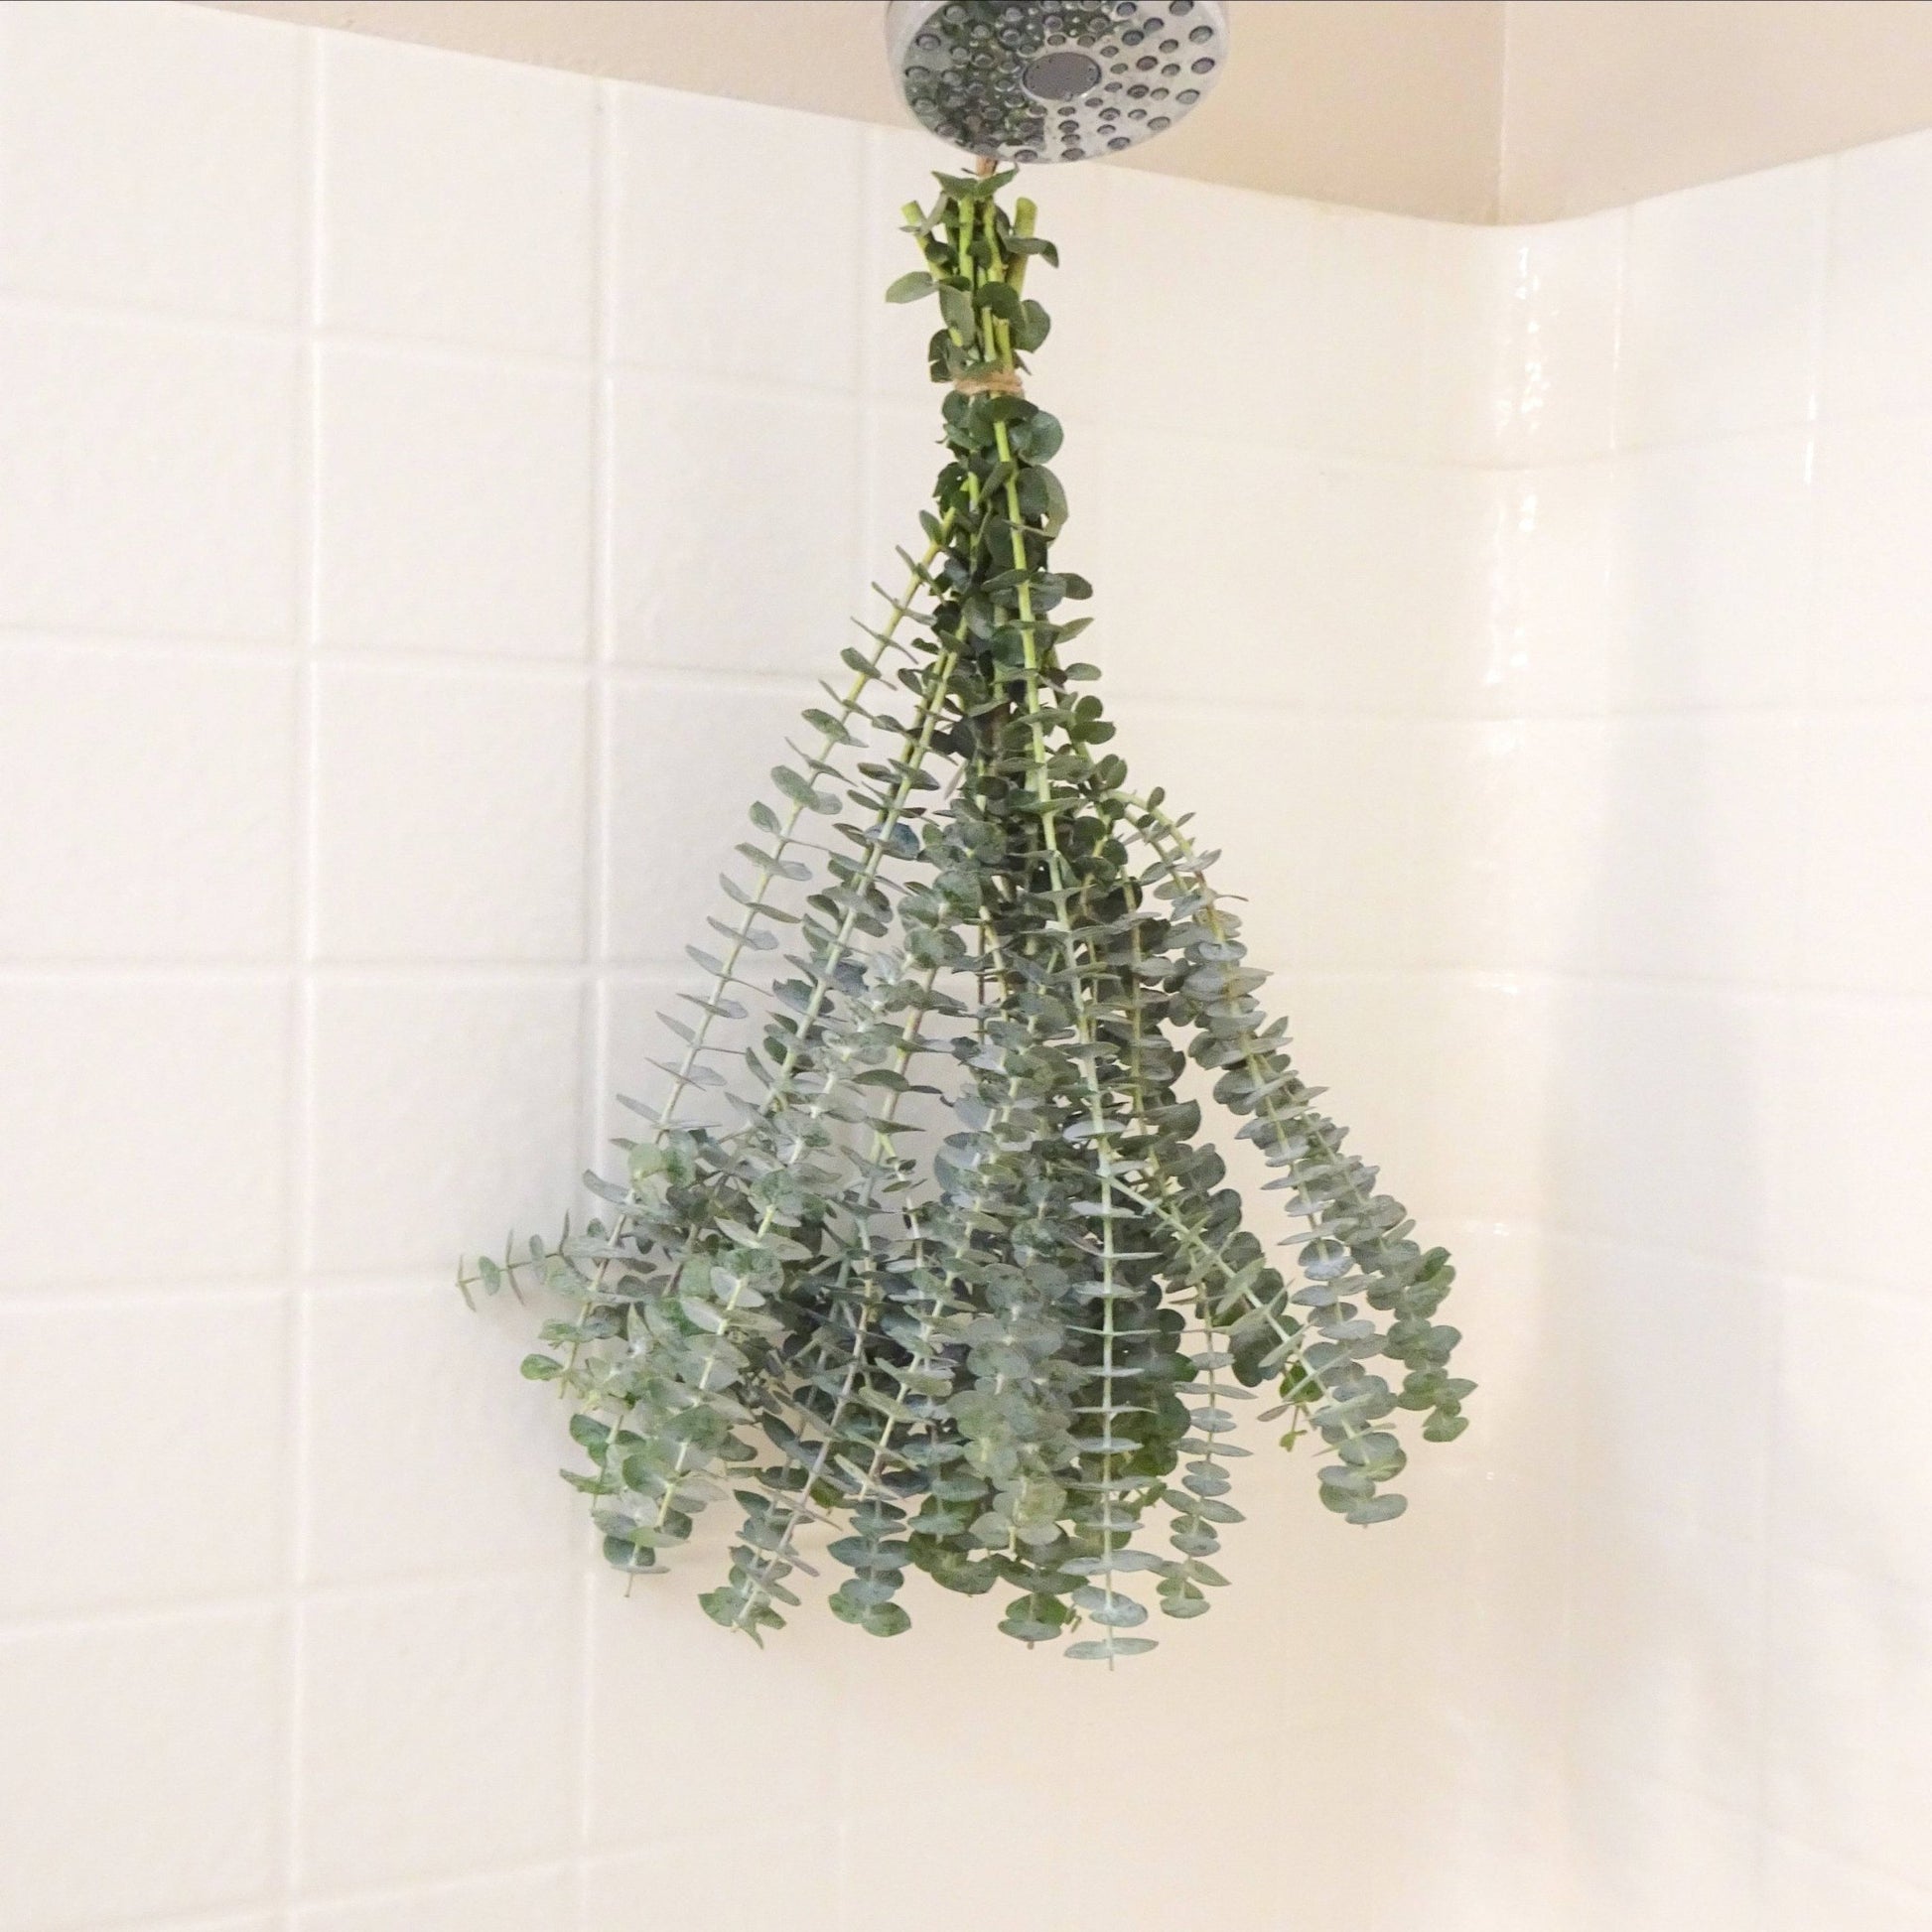 Eucalyptus in shower 